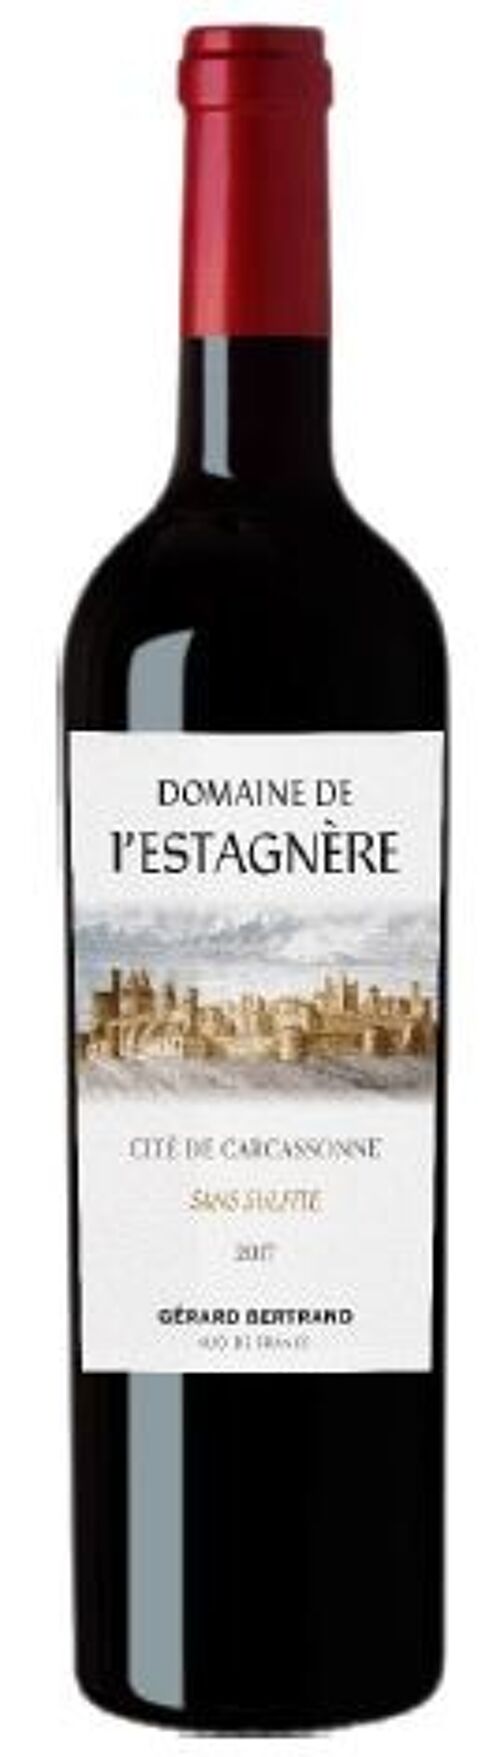 Domaine de l'Estagnère - Rouge - 75cl - Maison Gérard Bertrand - Vin de Pays de la Cité de Carcassonne